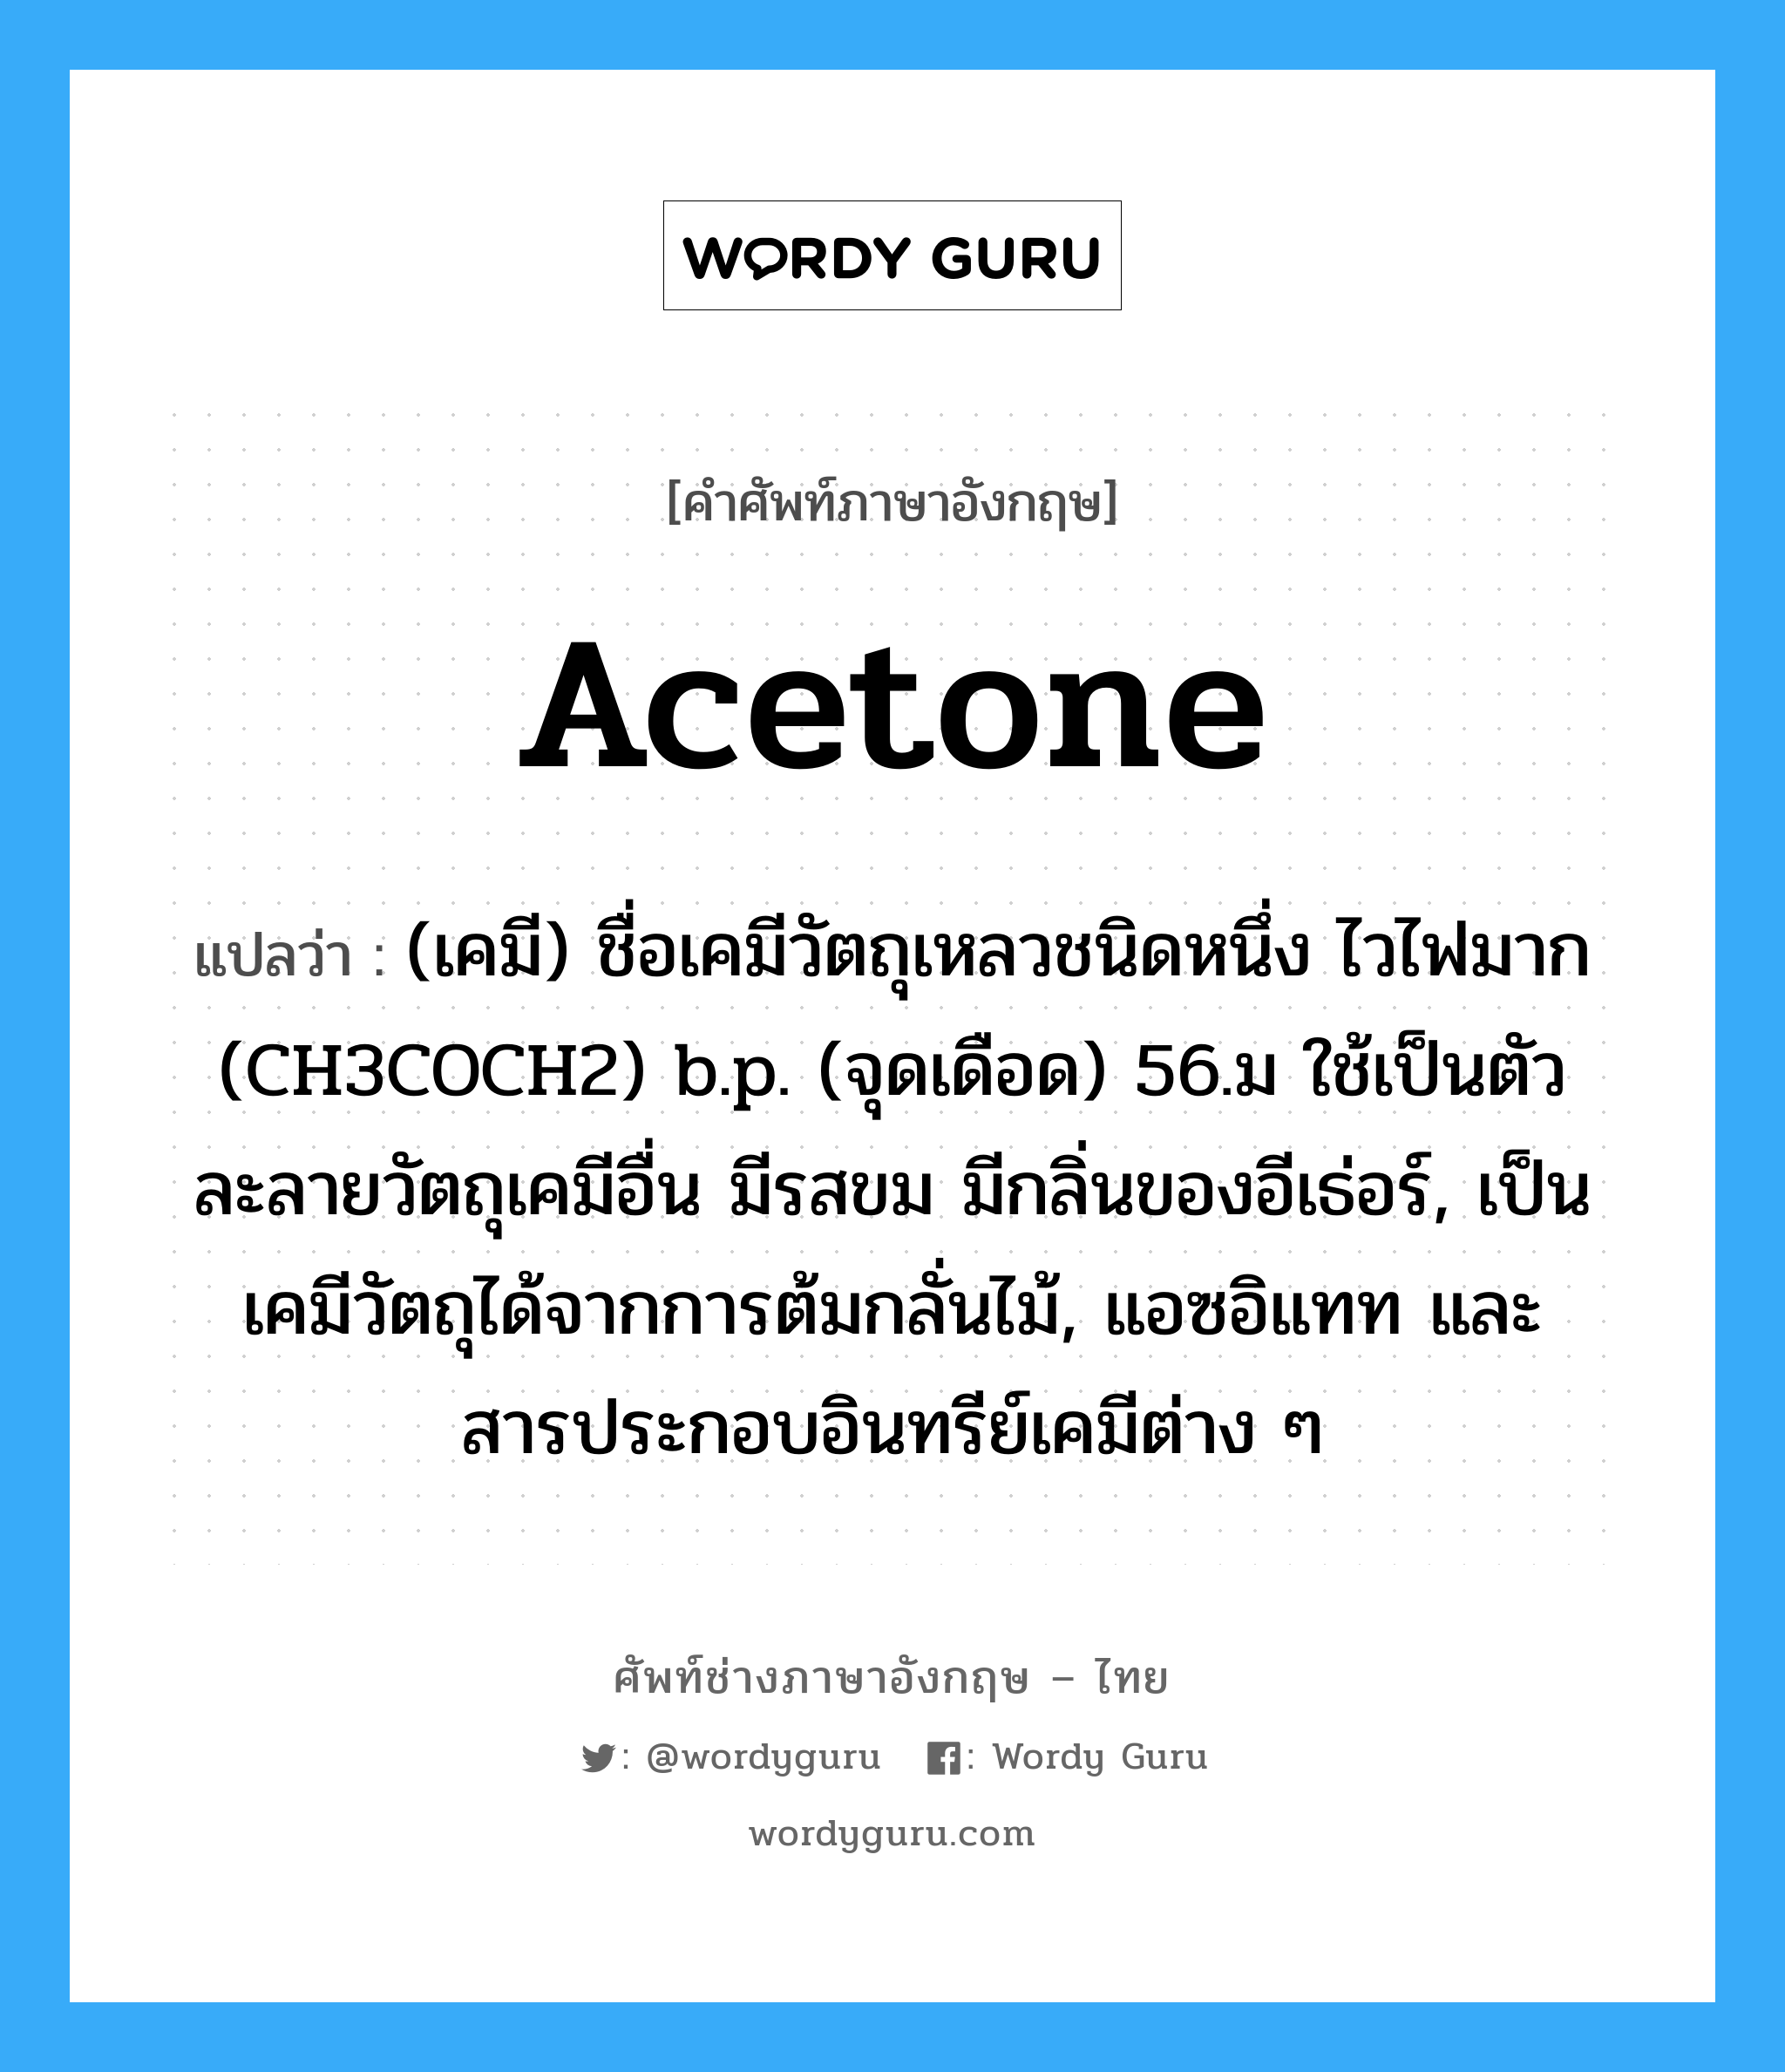 acetone แปลว่า?, คำศัพท์ช่างภาษาอังกฤษ - ไทย acetone คำศัพท์ภาษาอังกฤษ acetone แปลว่า (เคมี) ชื่อเคมีวัตถุเหลวชนิดหนึ่ง ไวไฟมาก (CH3COCH2) b.p. (จุดเดือด) 56.ม ใช้เป็นตัวละลายวัตถุเคมีอื่น มีรสขม มีกลิ่นของอีเธ่อร์, เป็นเคมีวัตถุได้จากการต้มกลั่นไม้, แอซอิแทท และสารประกอบอินทรีย์เคมีต่าง ๆ